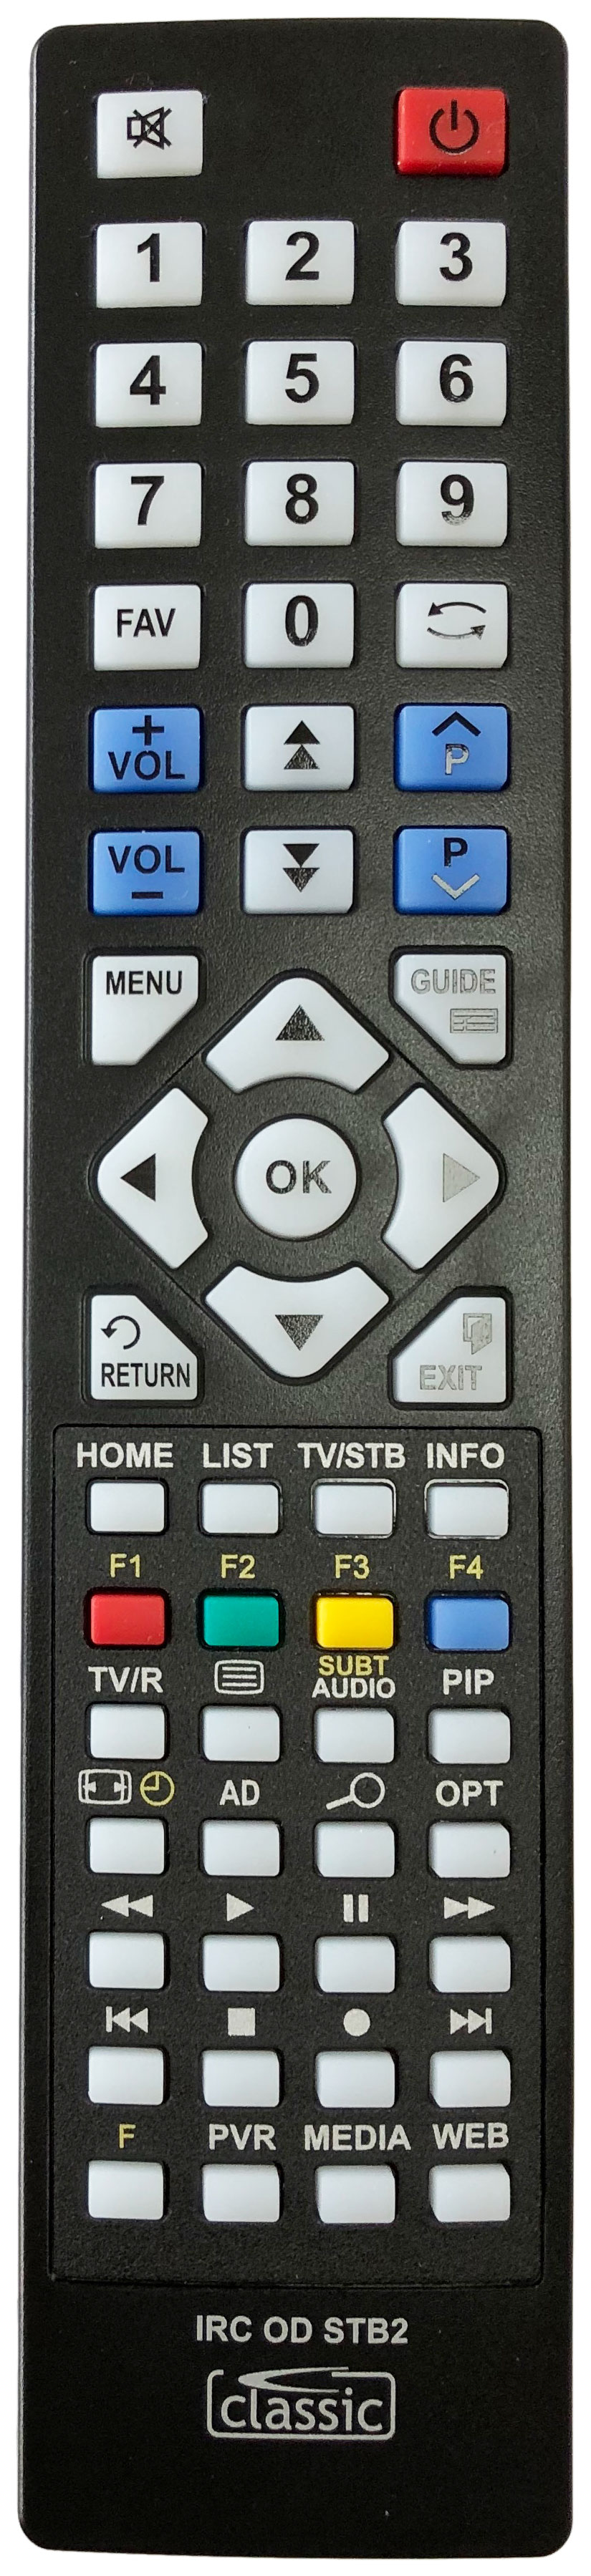 Hitachi RC2712 Remote Control Alternative